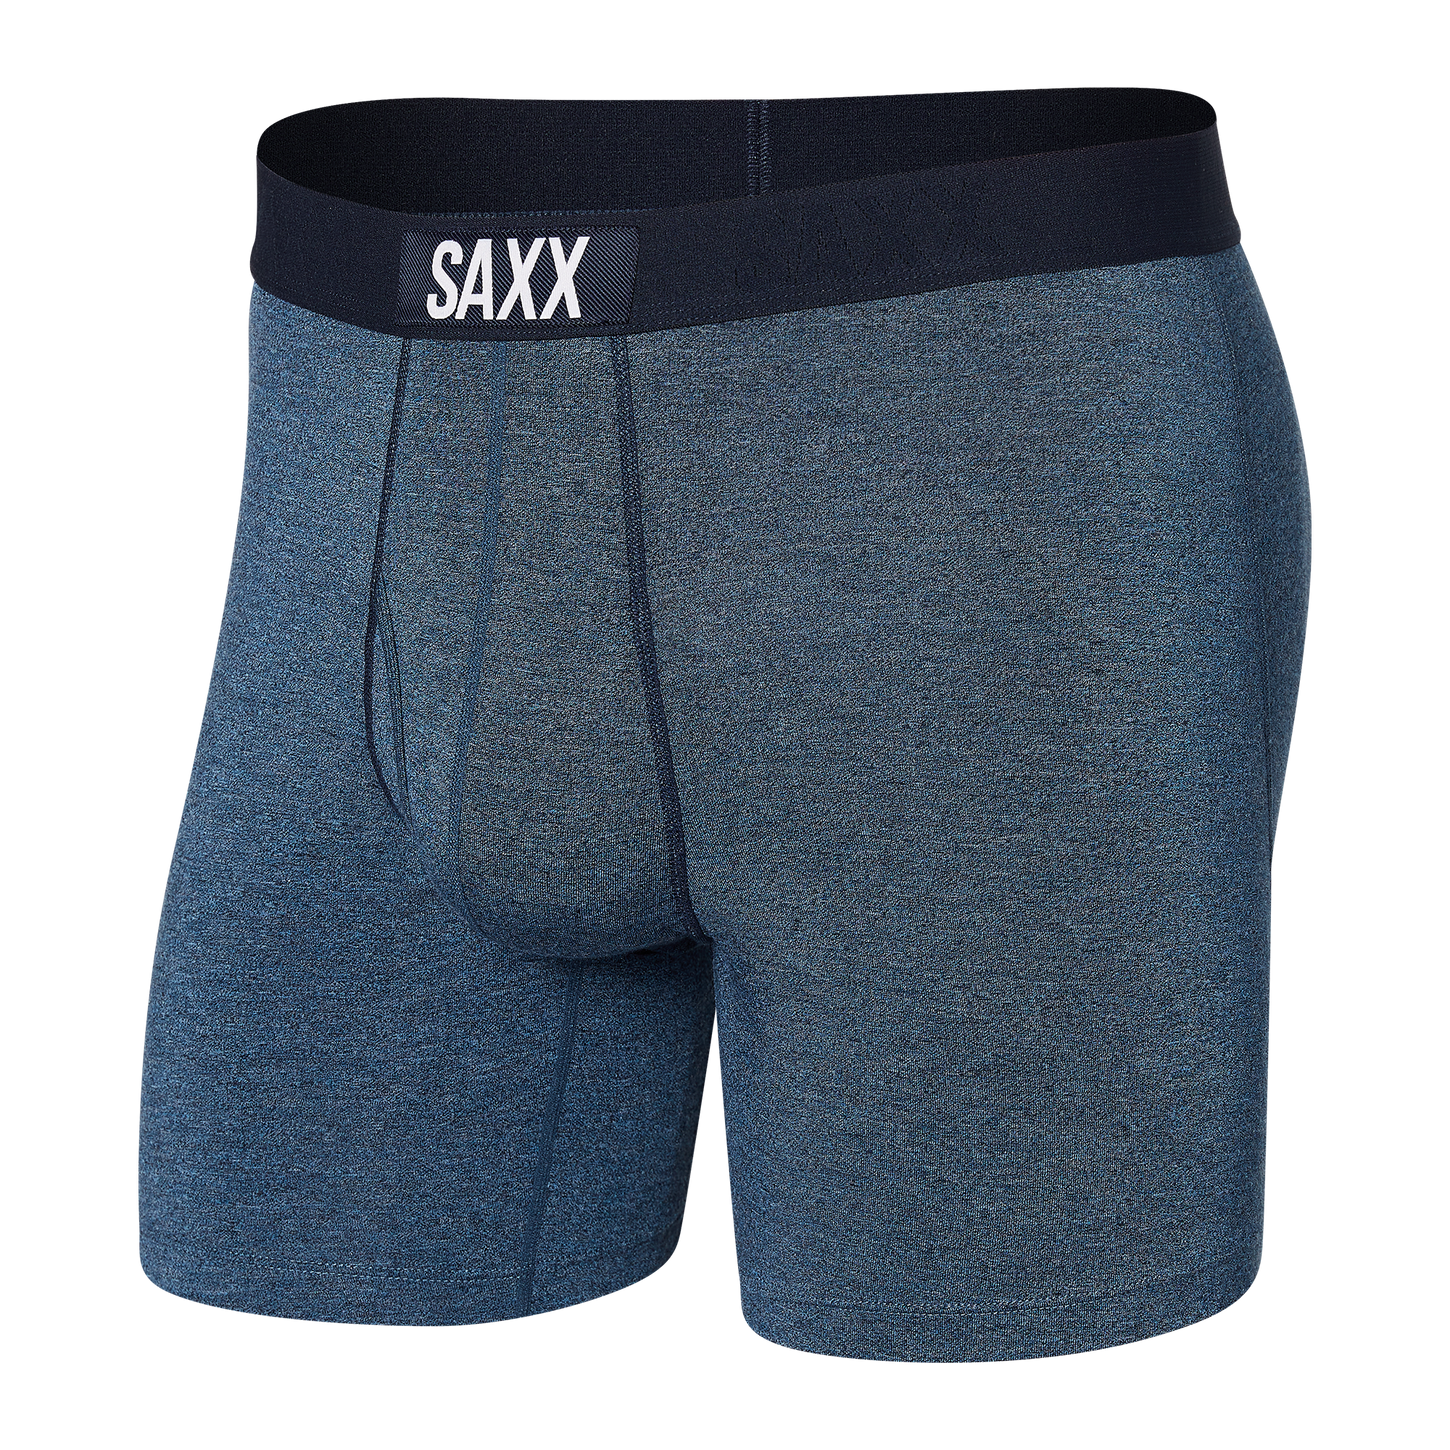 Saxx Men's Ultra Boxer Brief Apparel SAXX Indigo Small 